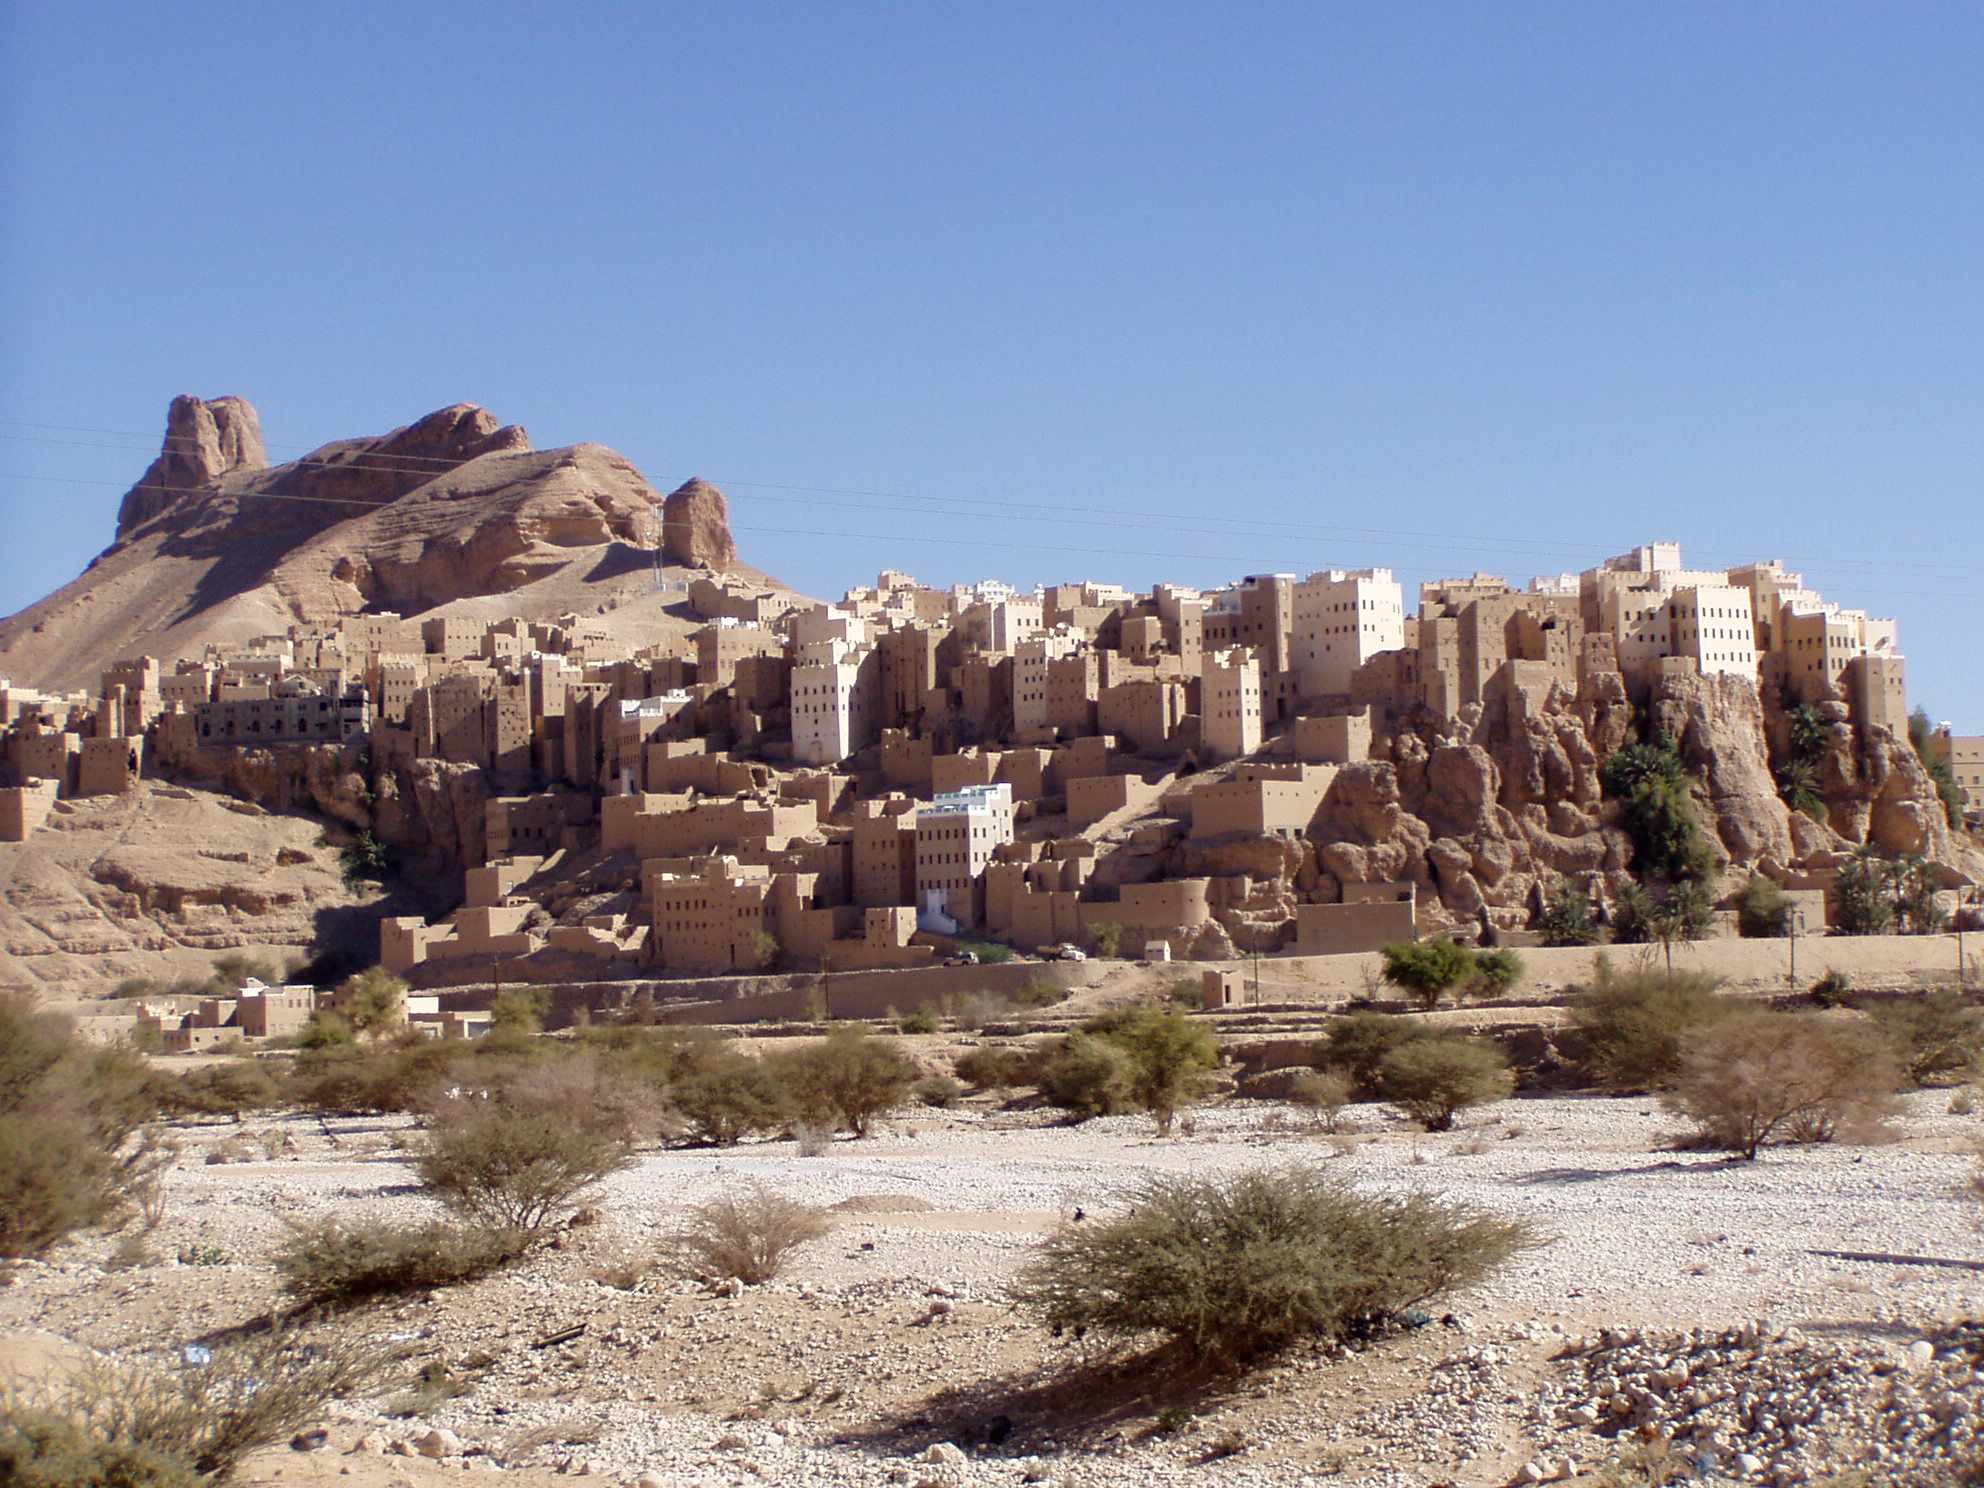 El increíble pueblo de Yemen construido sobre un gigantesco bloque de roca de 150 metros de altura 2